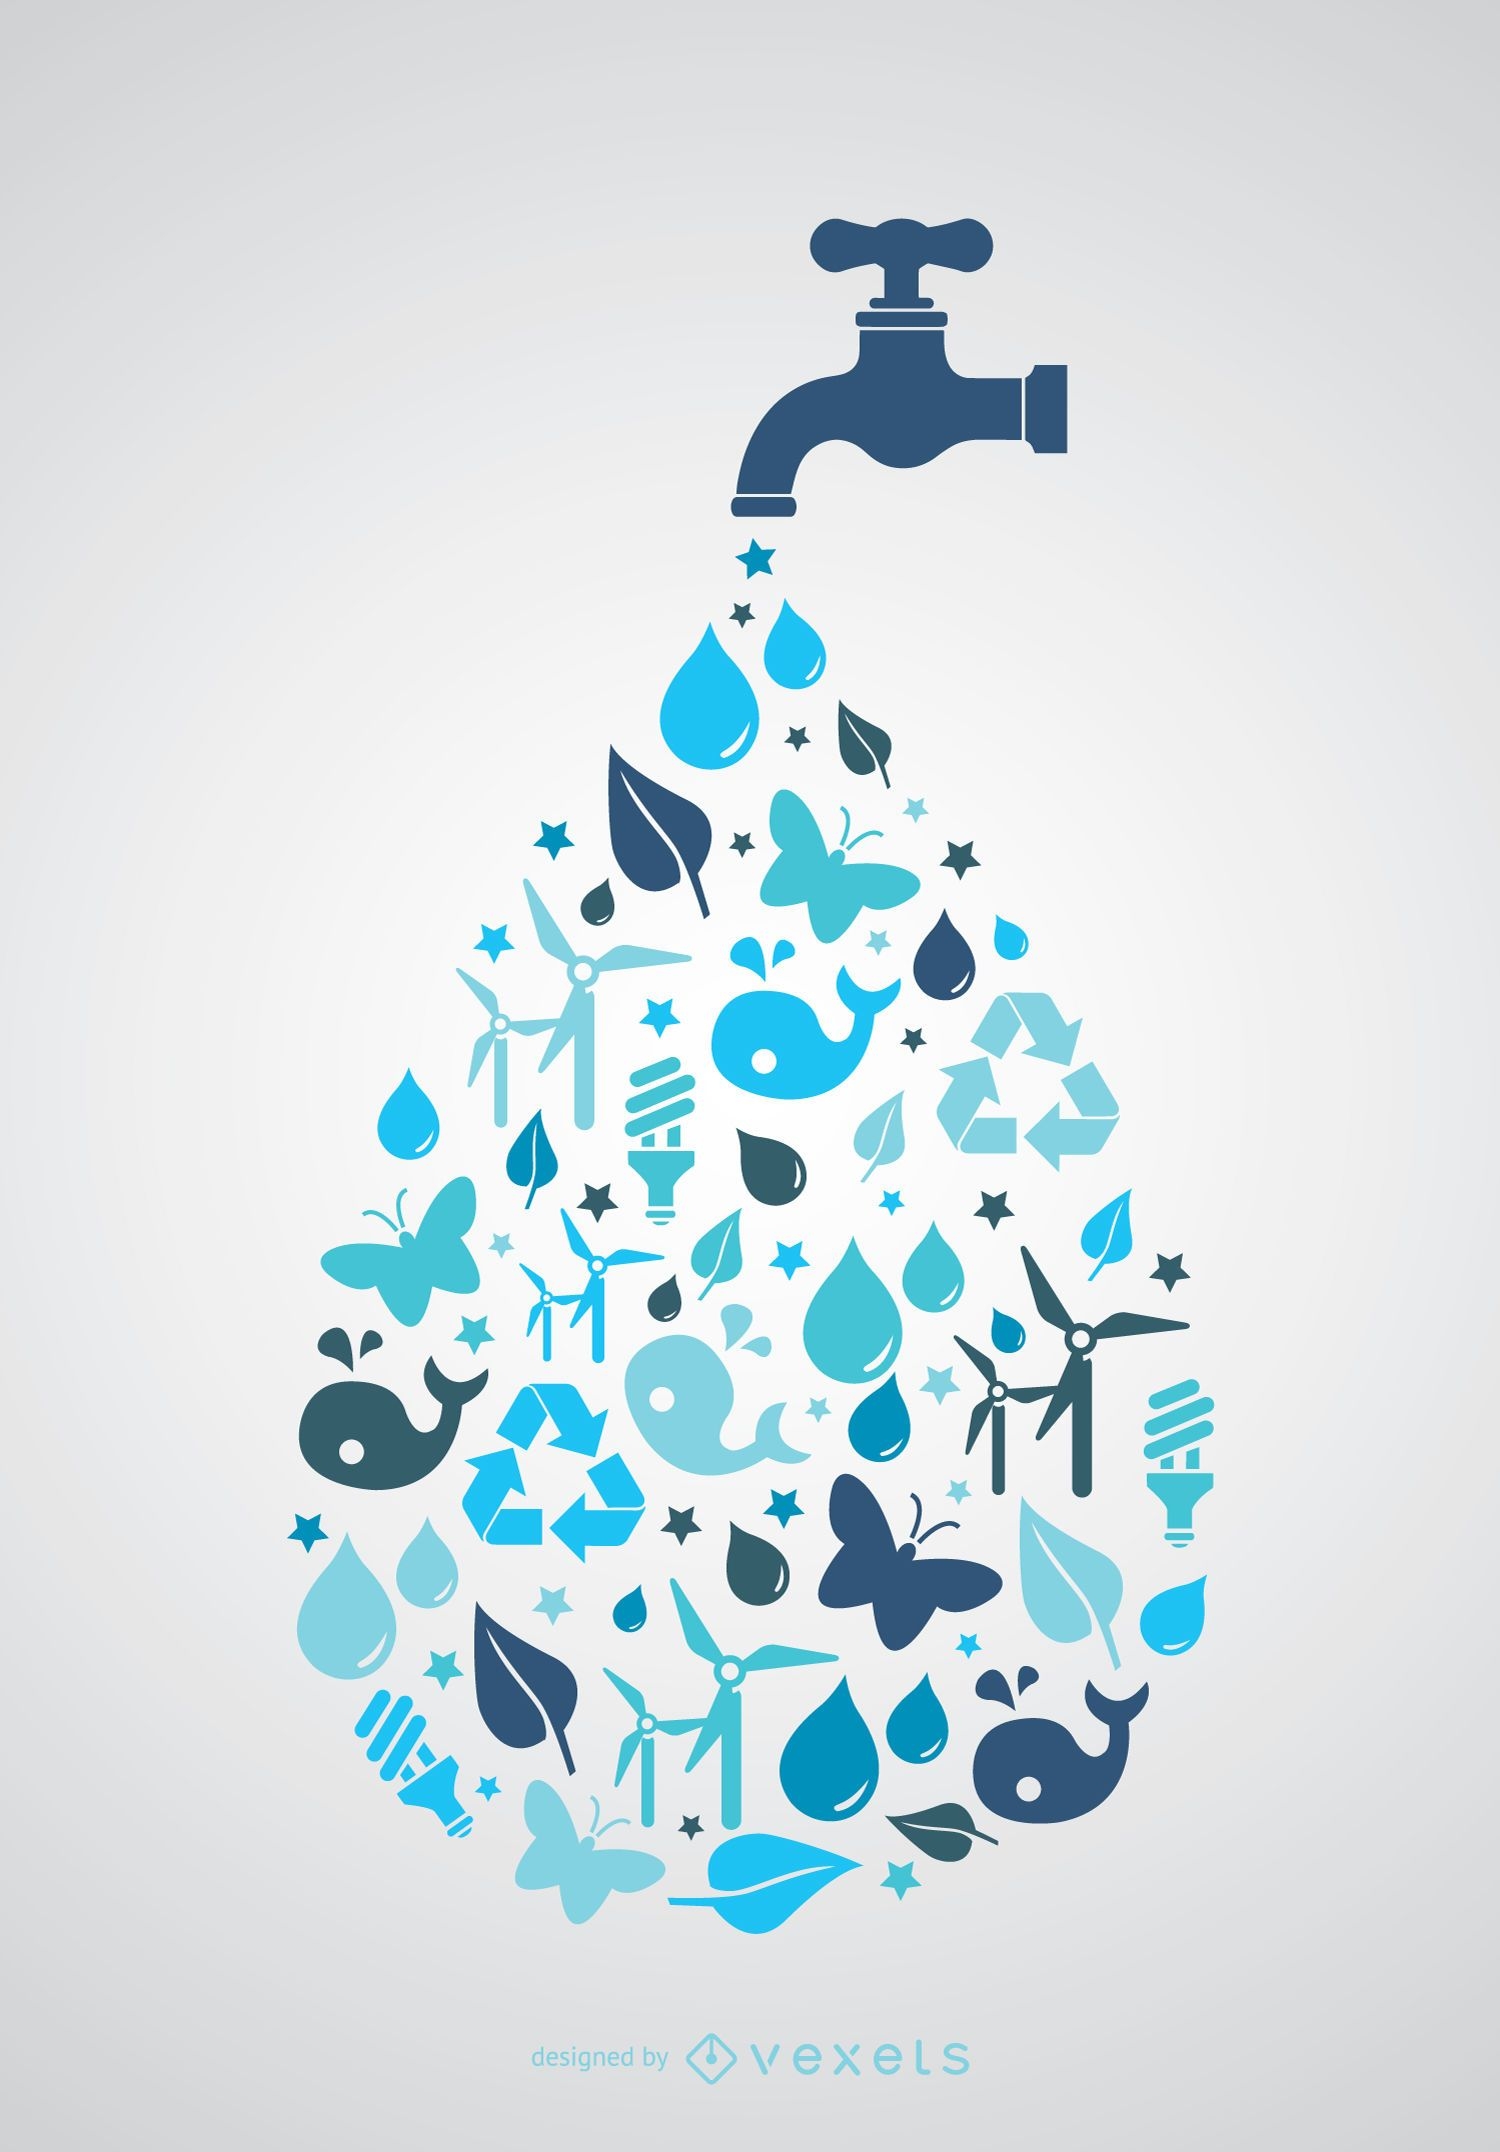 D?a mundial del agua: toque con iconos